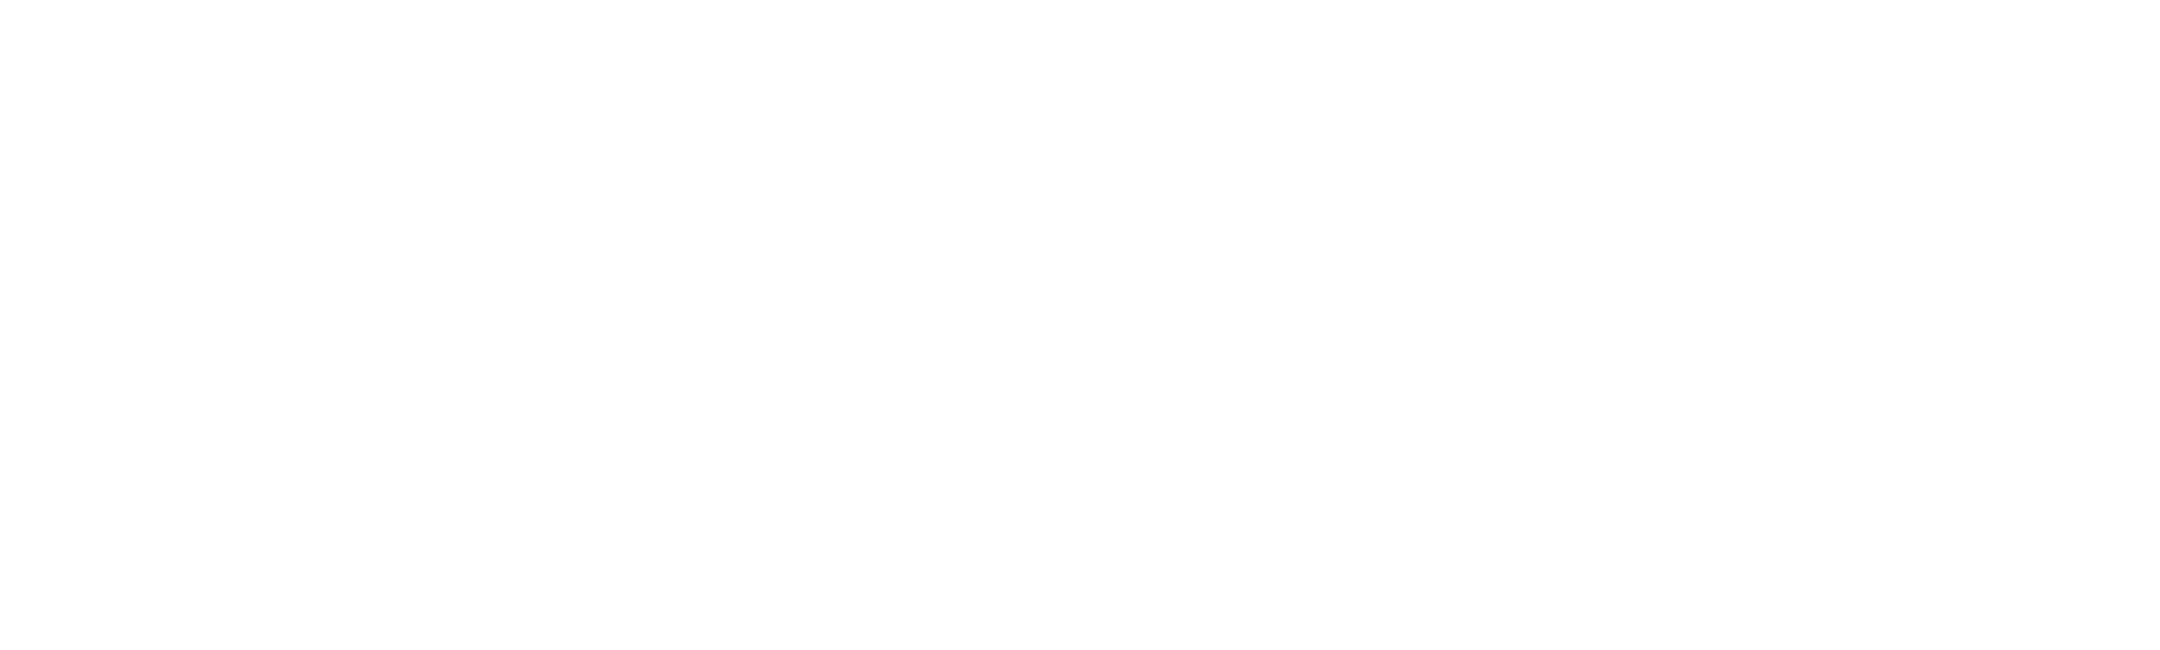 معالج بوابة الدفع بالعملة المشفرة - FSFPAY.com